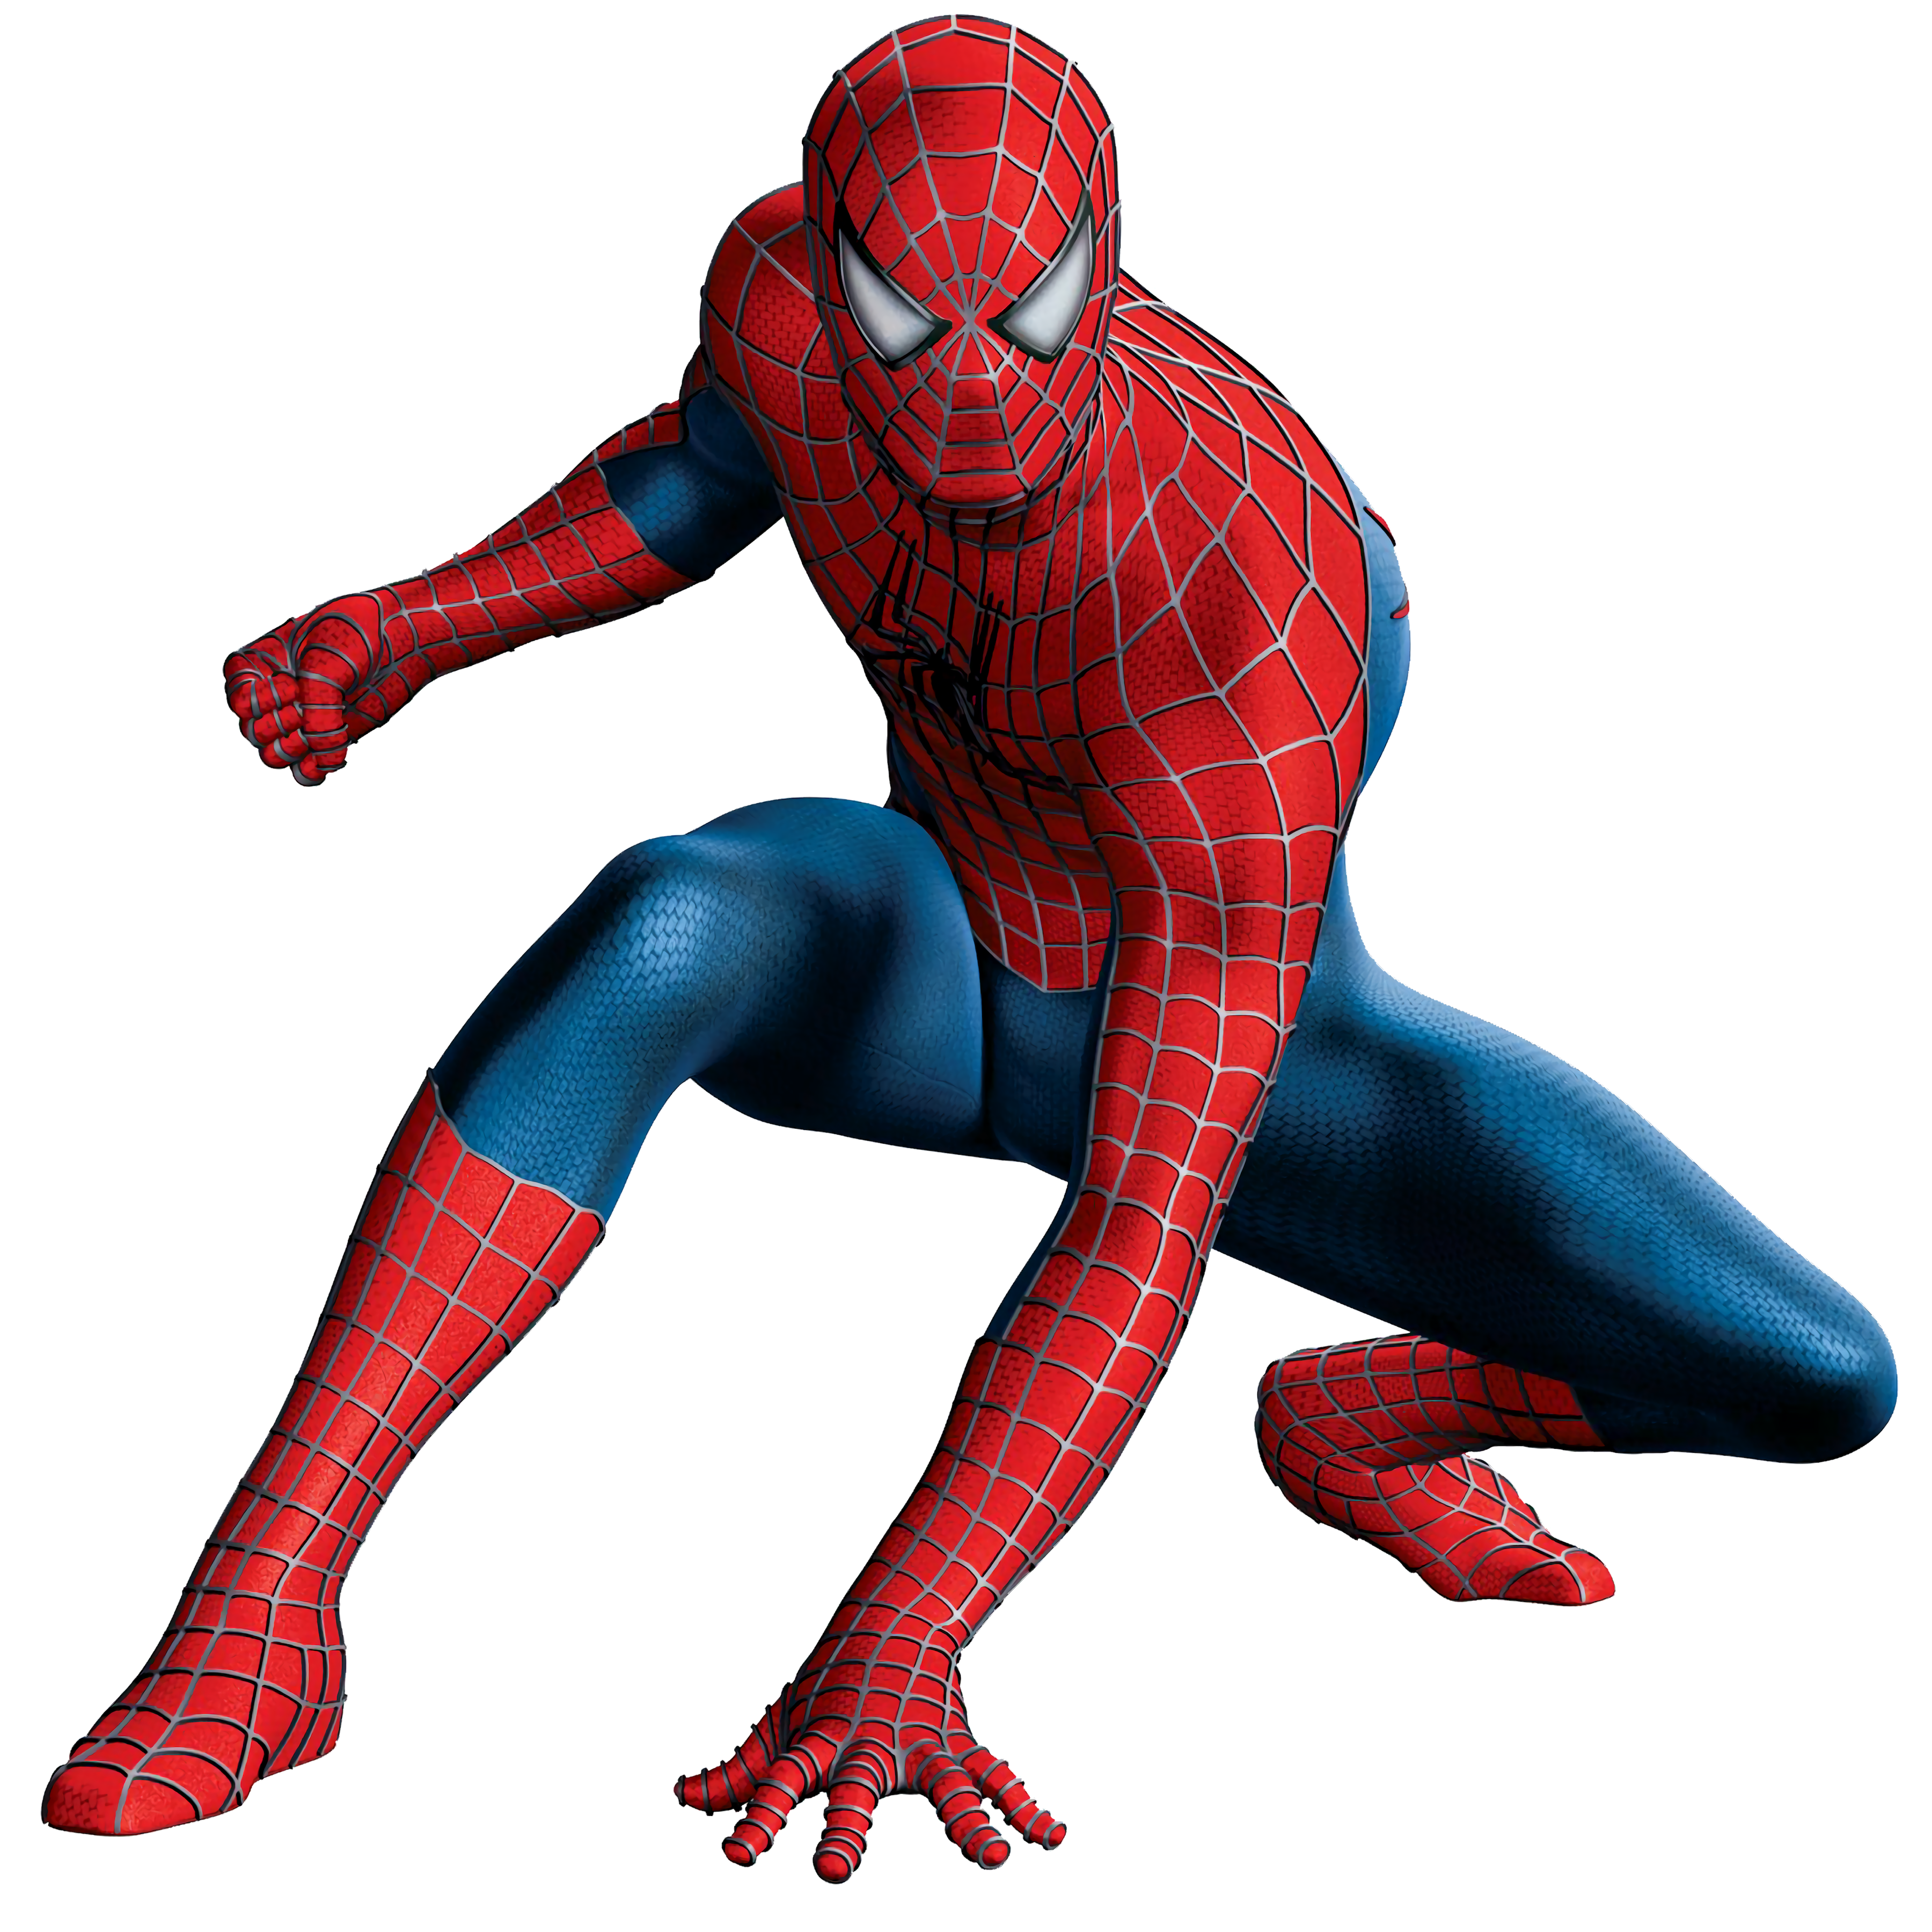 Juegos de Spiderman - Juega a Juegos de en Friv 5